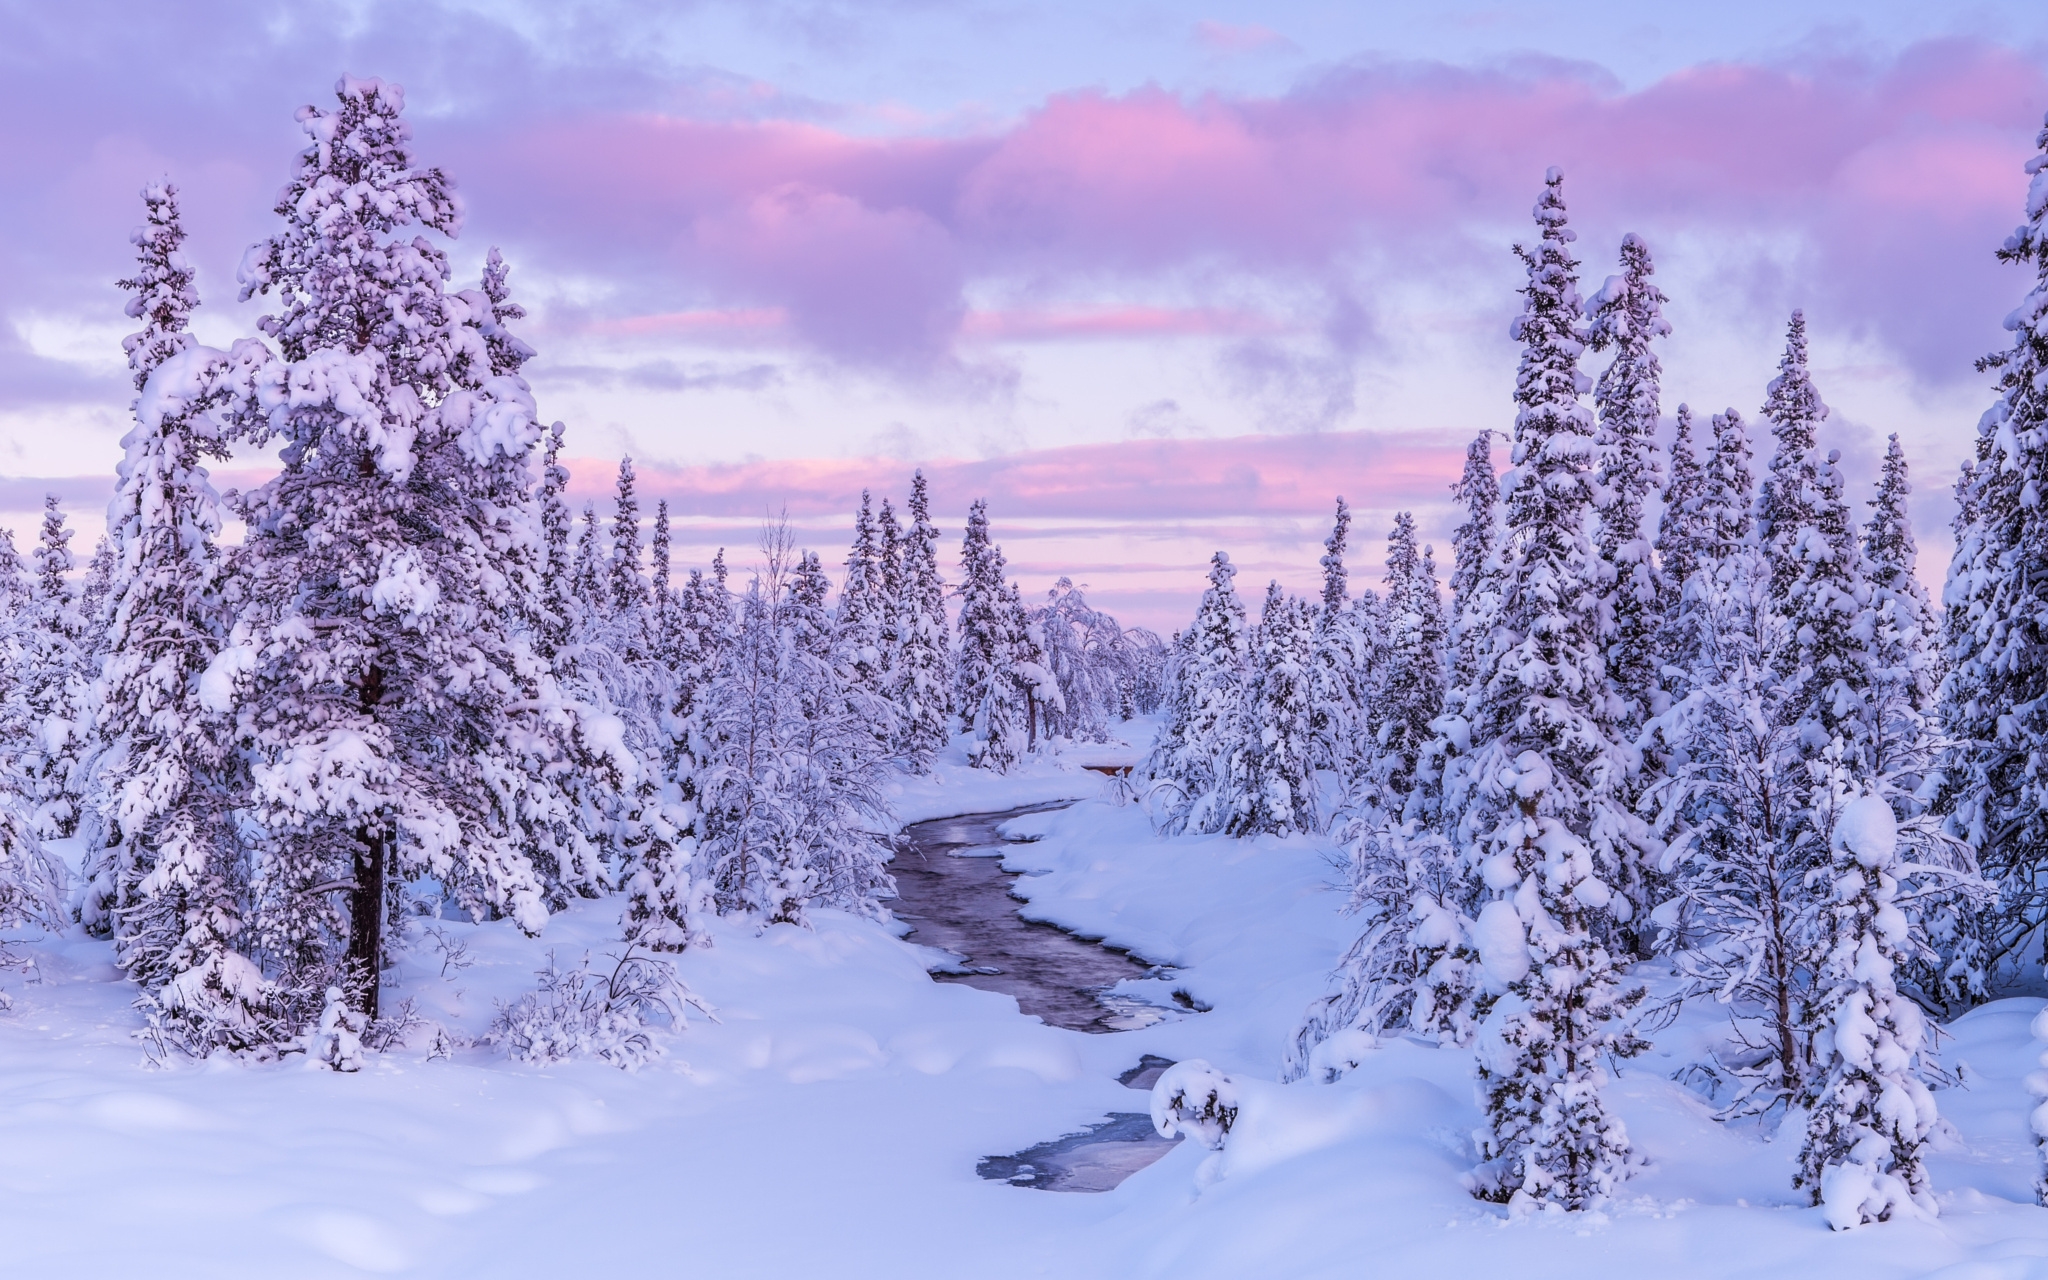 Скачать обои бесплатно Зима, Небо, Облака, Снег, Лес, Дерево, Земля/природа картинка на рабочий стол ПК